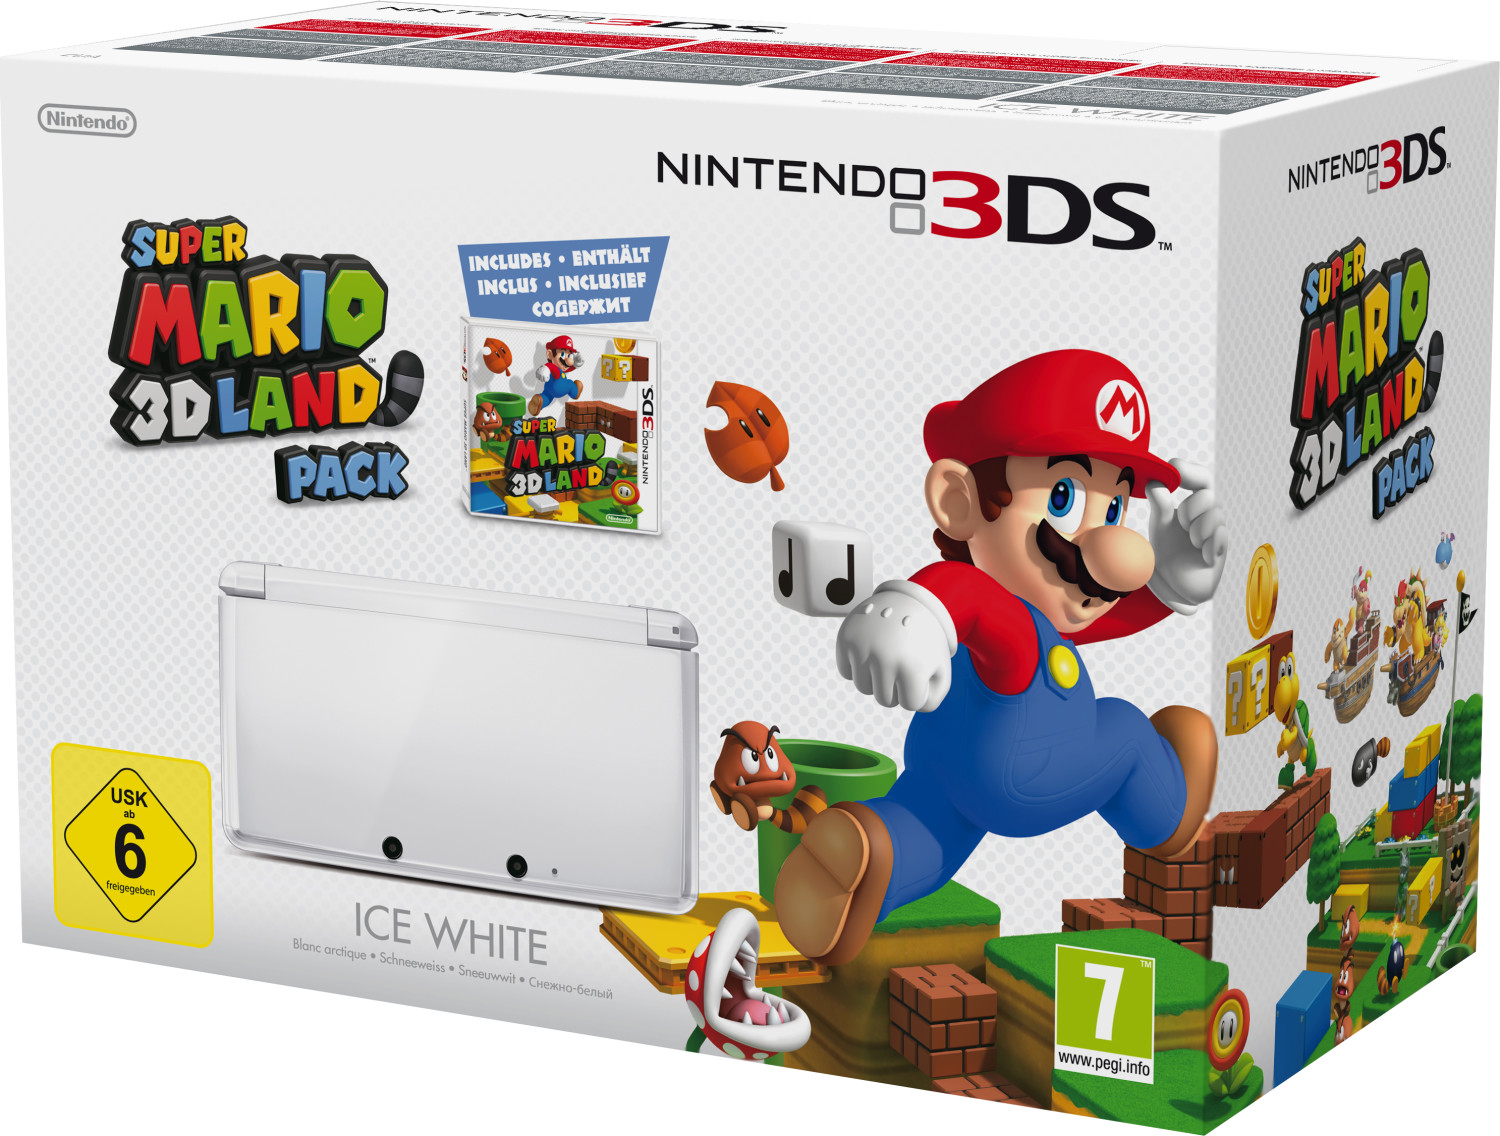 Nintendo 3DS schneeweiß inkl. Super Mario 3D Land